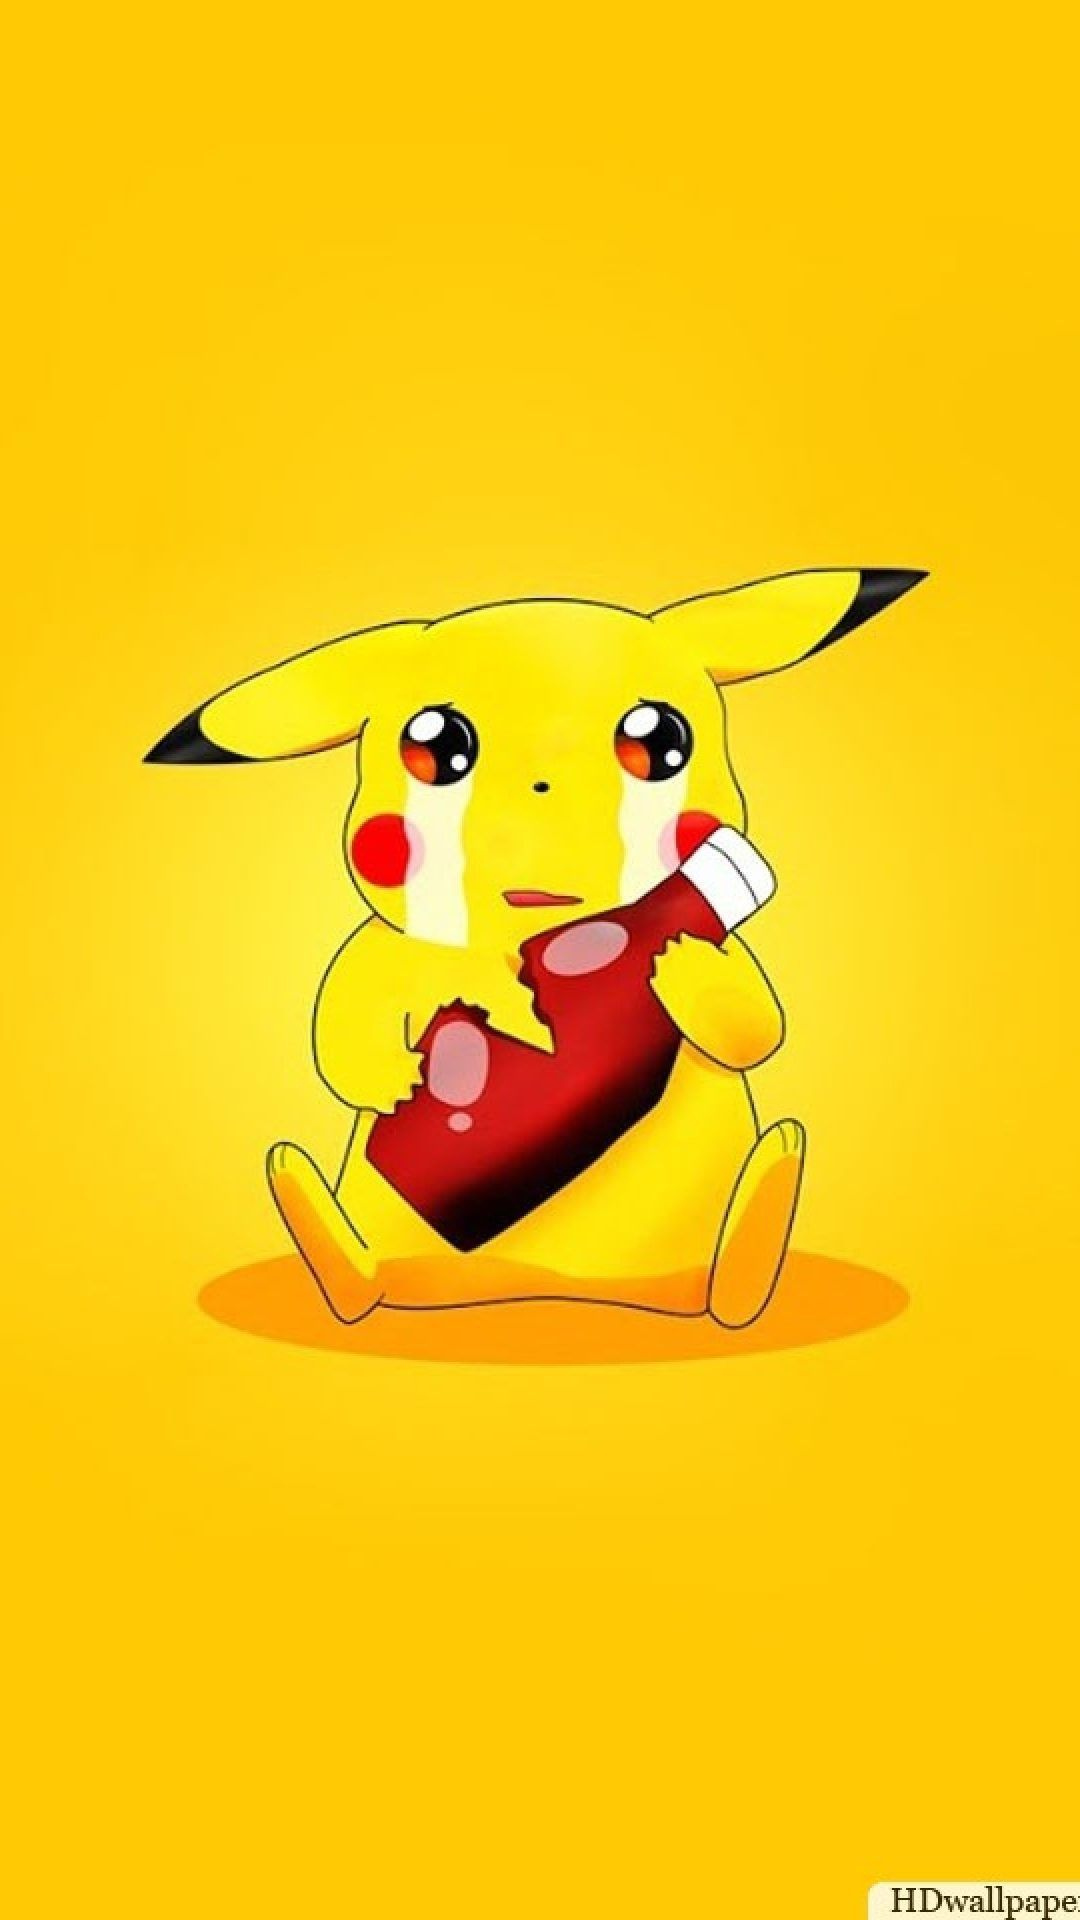 Pikachu - crying